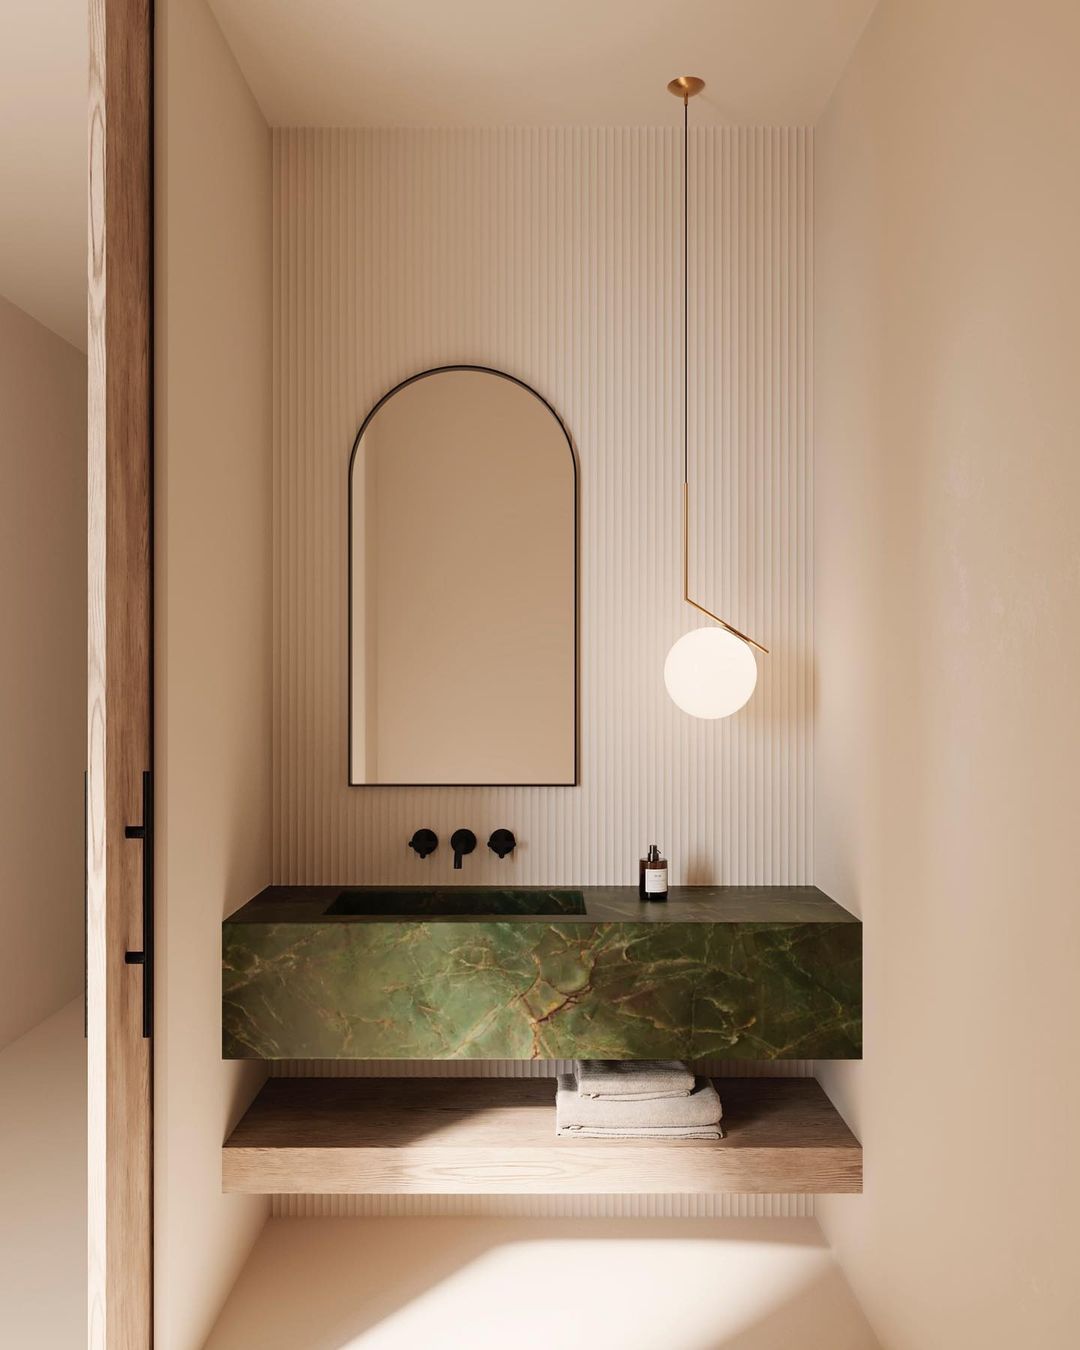 Bathroom Basins: Enhance Your Bathroom Décor with Stylish Bathroom Basins